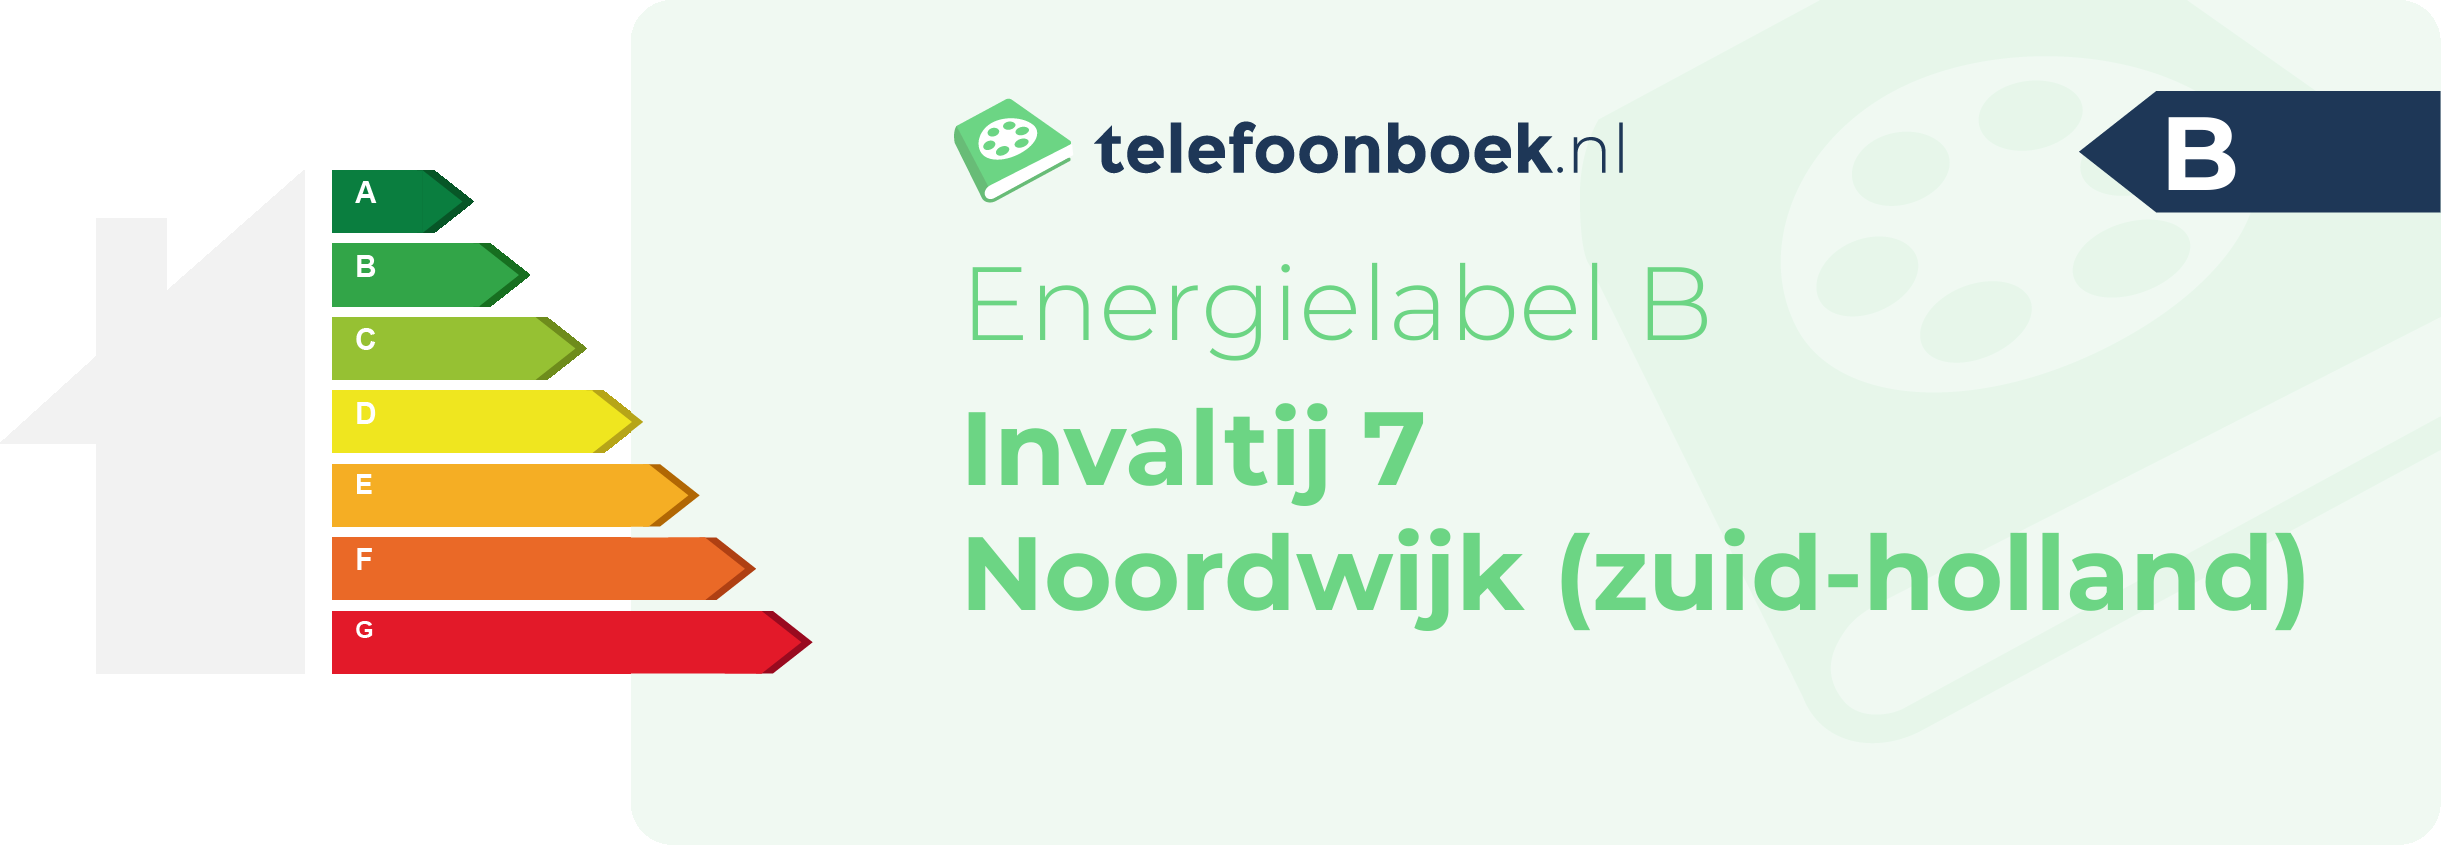 Energielabel Invaltij 7 Noordwijk (Zuid-Holland)